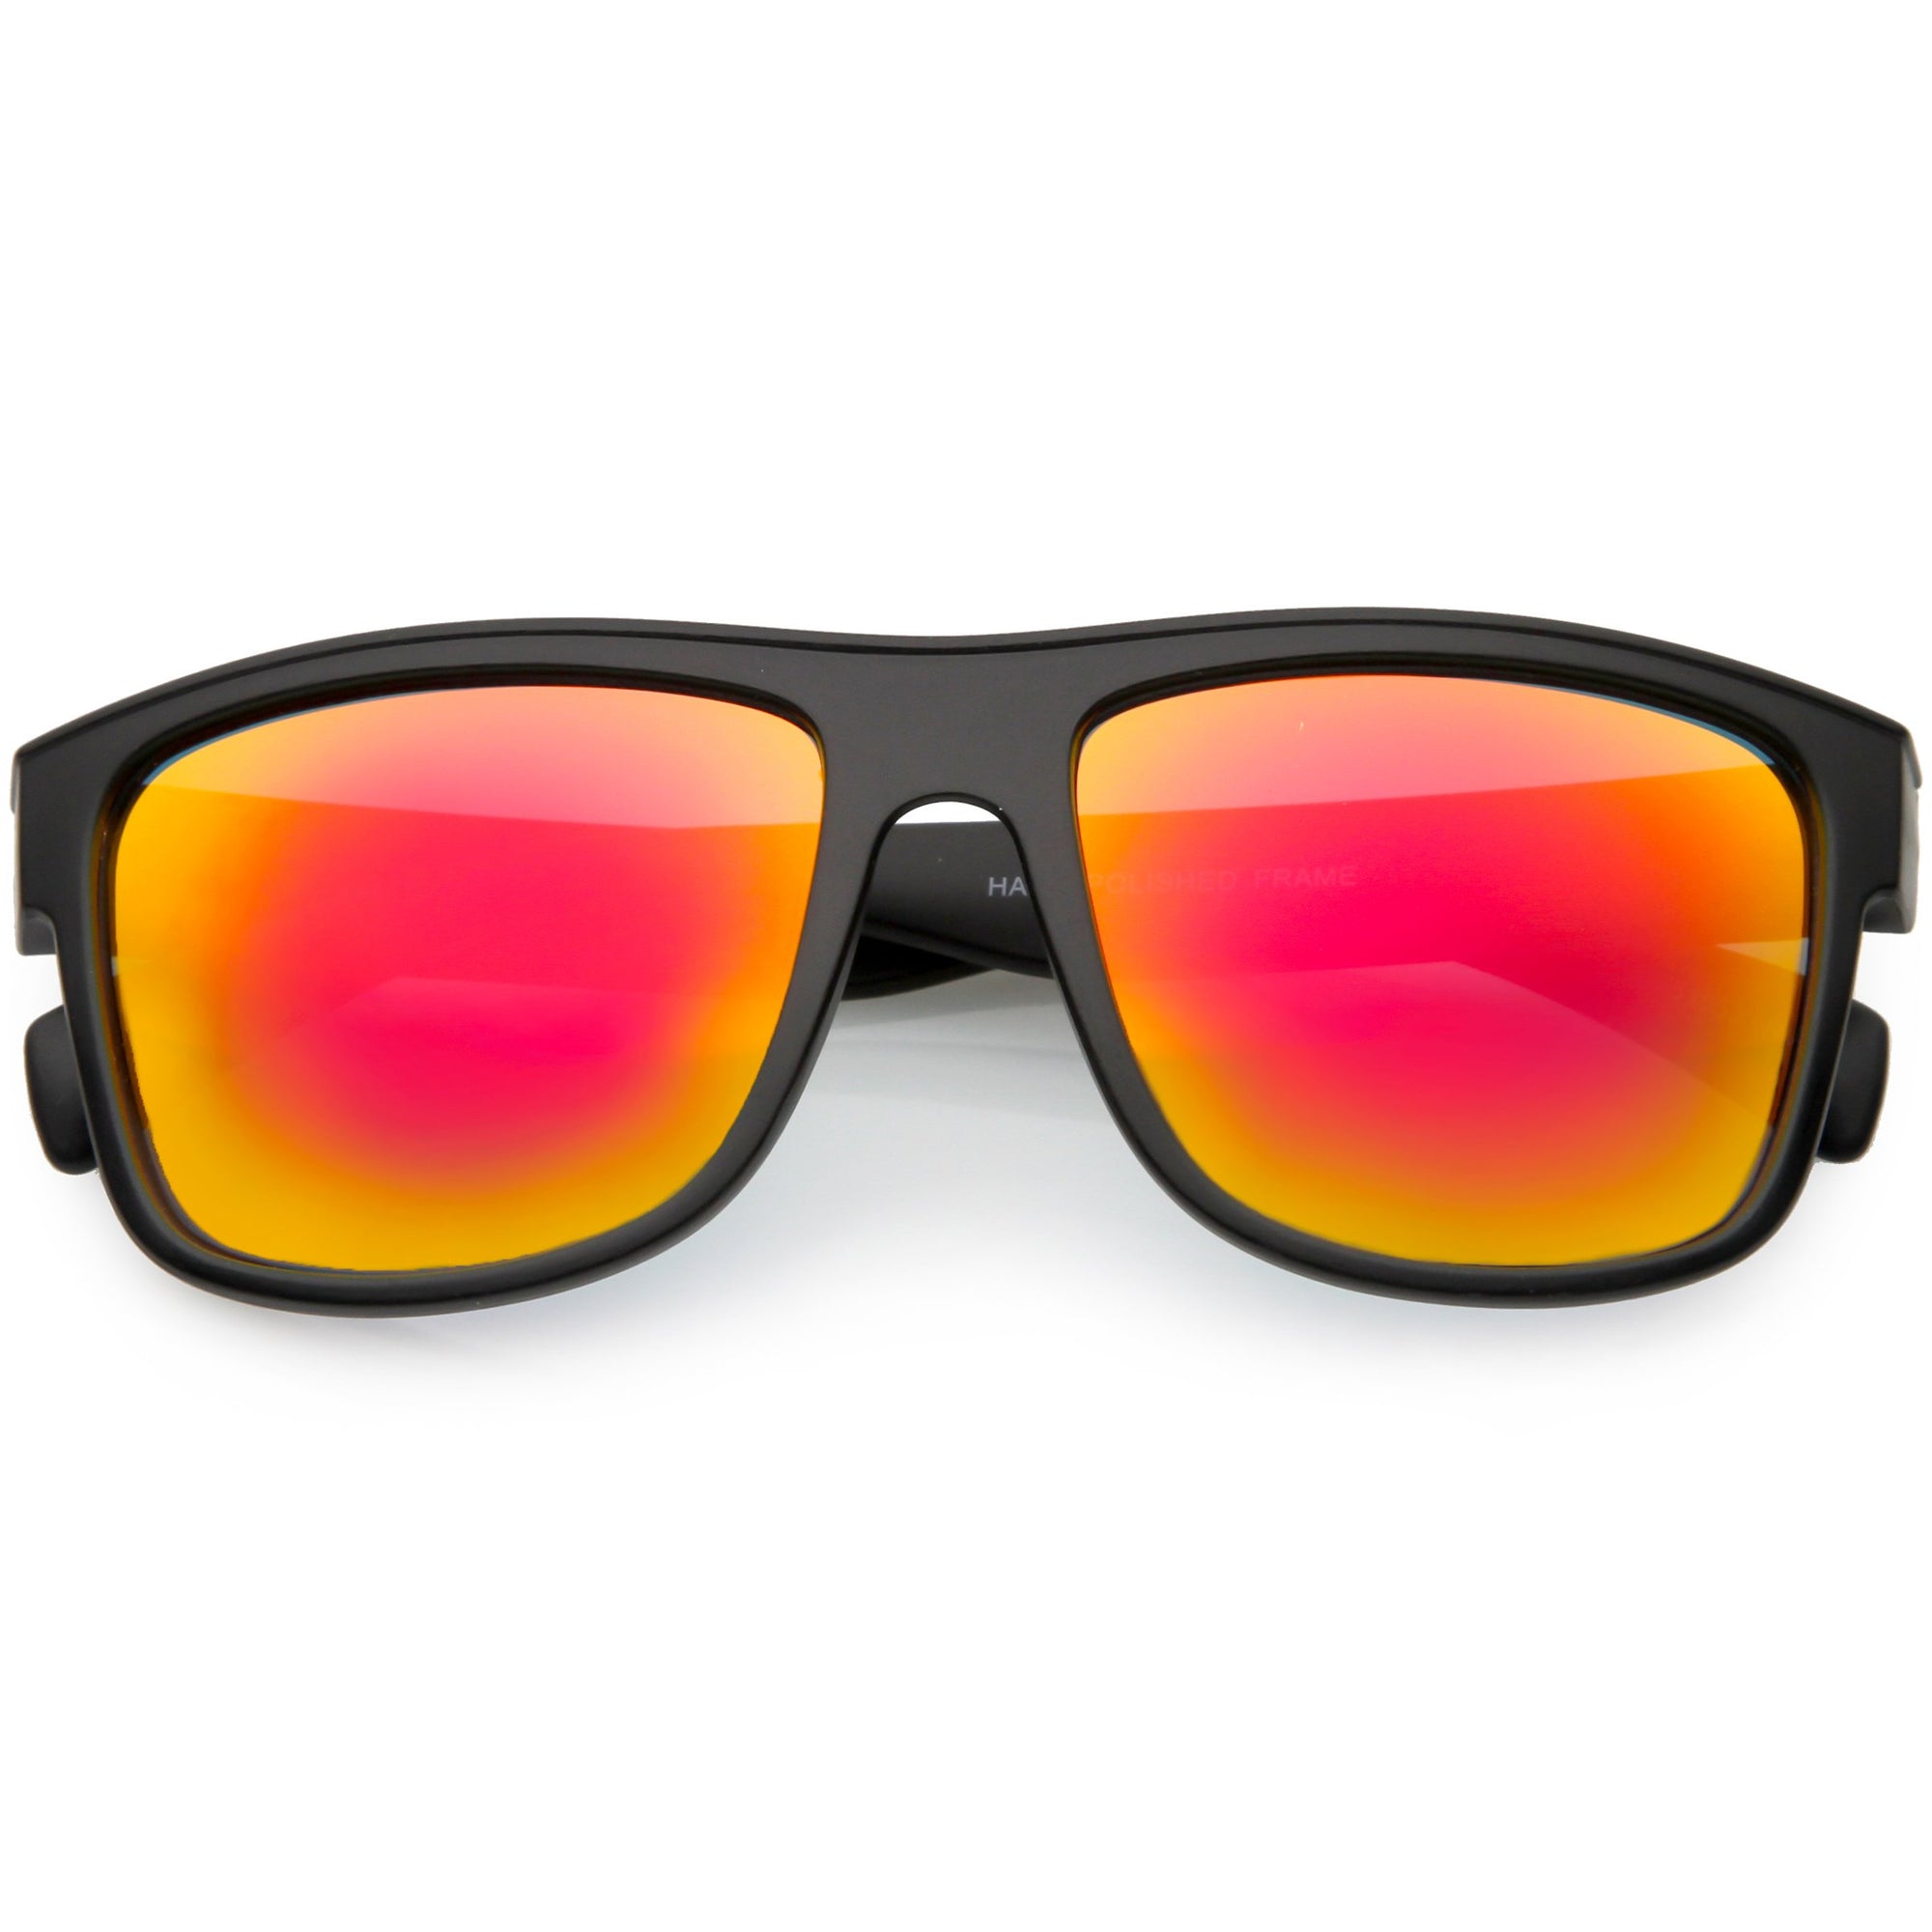 Zugatti Mirrored, Polarized, UV Protection Sport Sunglasses (Free